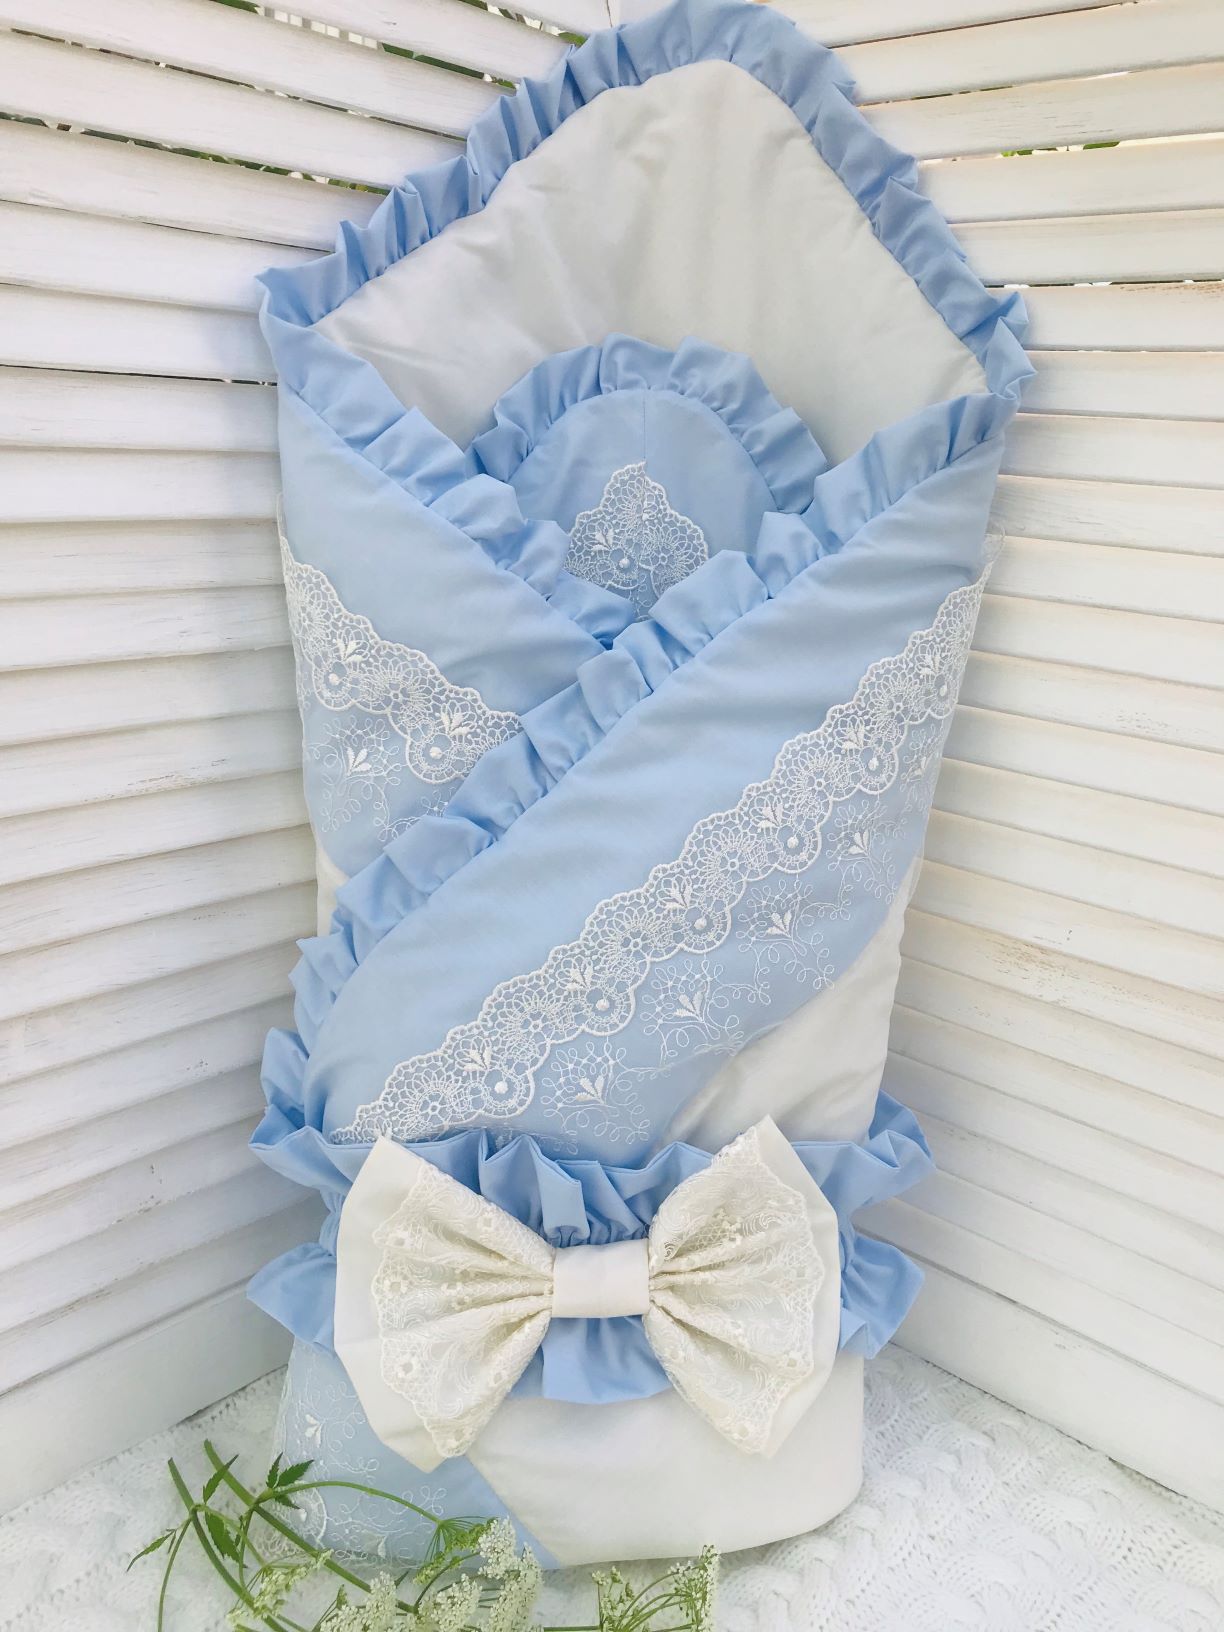 одеяло для новорожденного фото